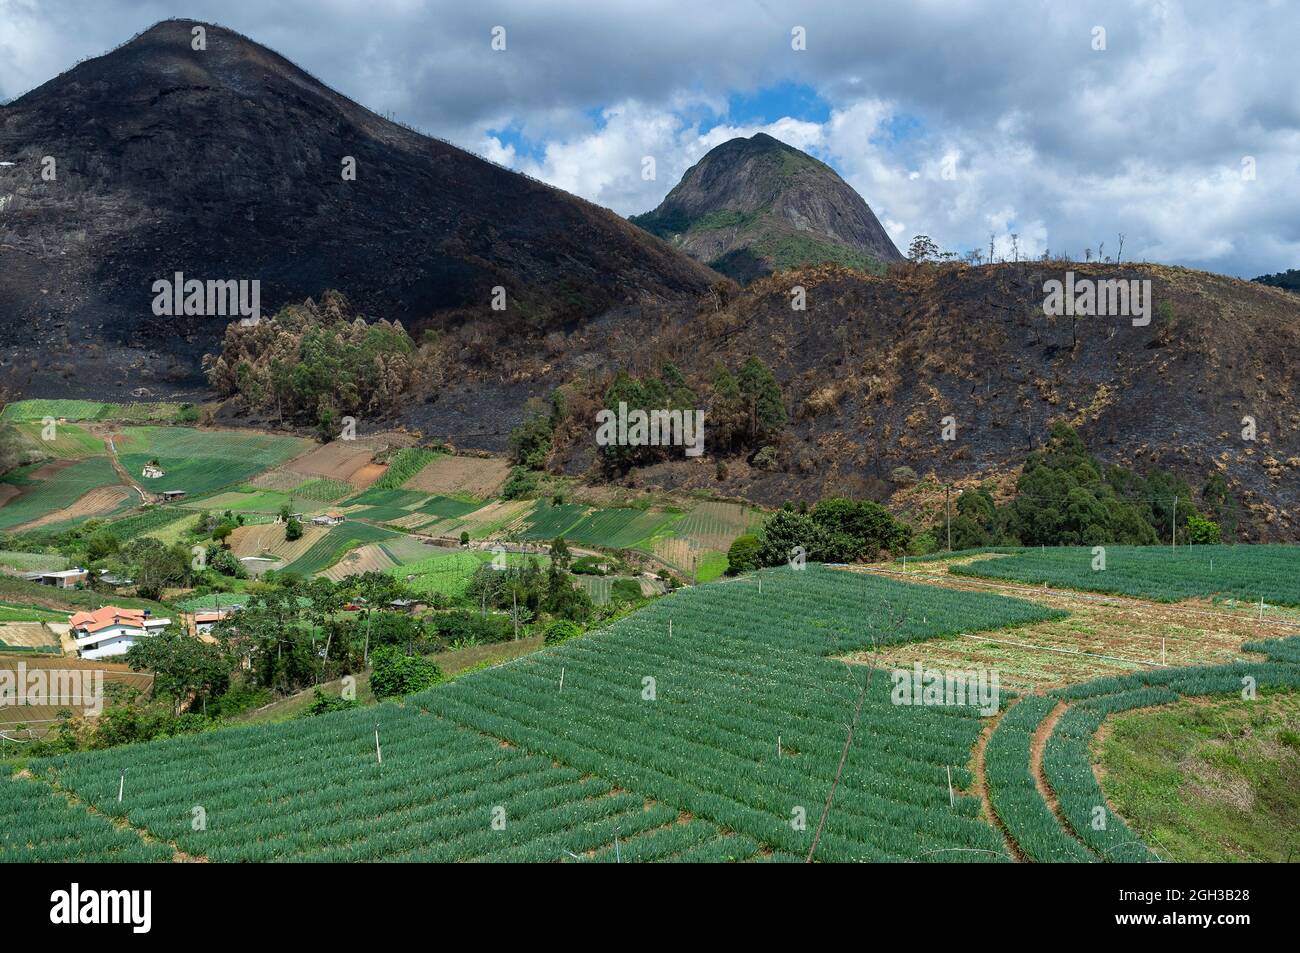 Die Landwirtschaft, die auf kleinen Farmen für die Gemüseproduktion verwendet wird, wird durch Brandrodung und vor kurzem verbranntes Land im Hintergrund und verschiedene Plantagen im Vordergrund zerstört und verbrannt. Stockfoto